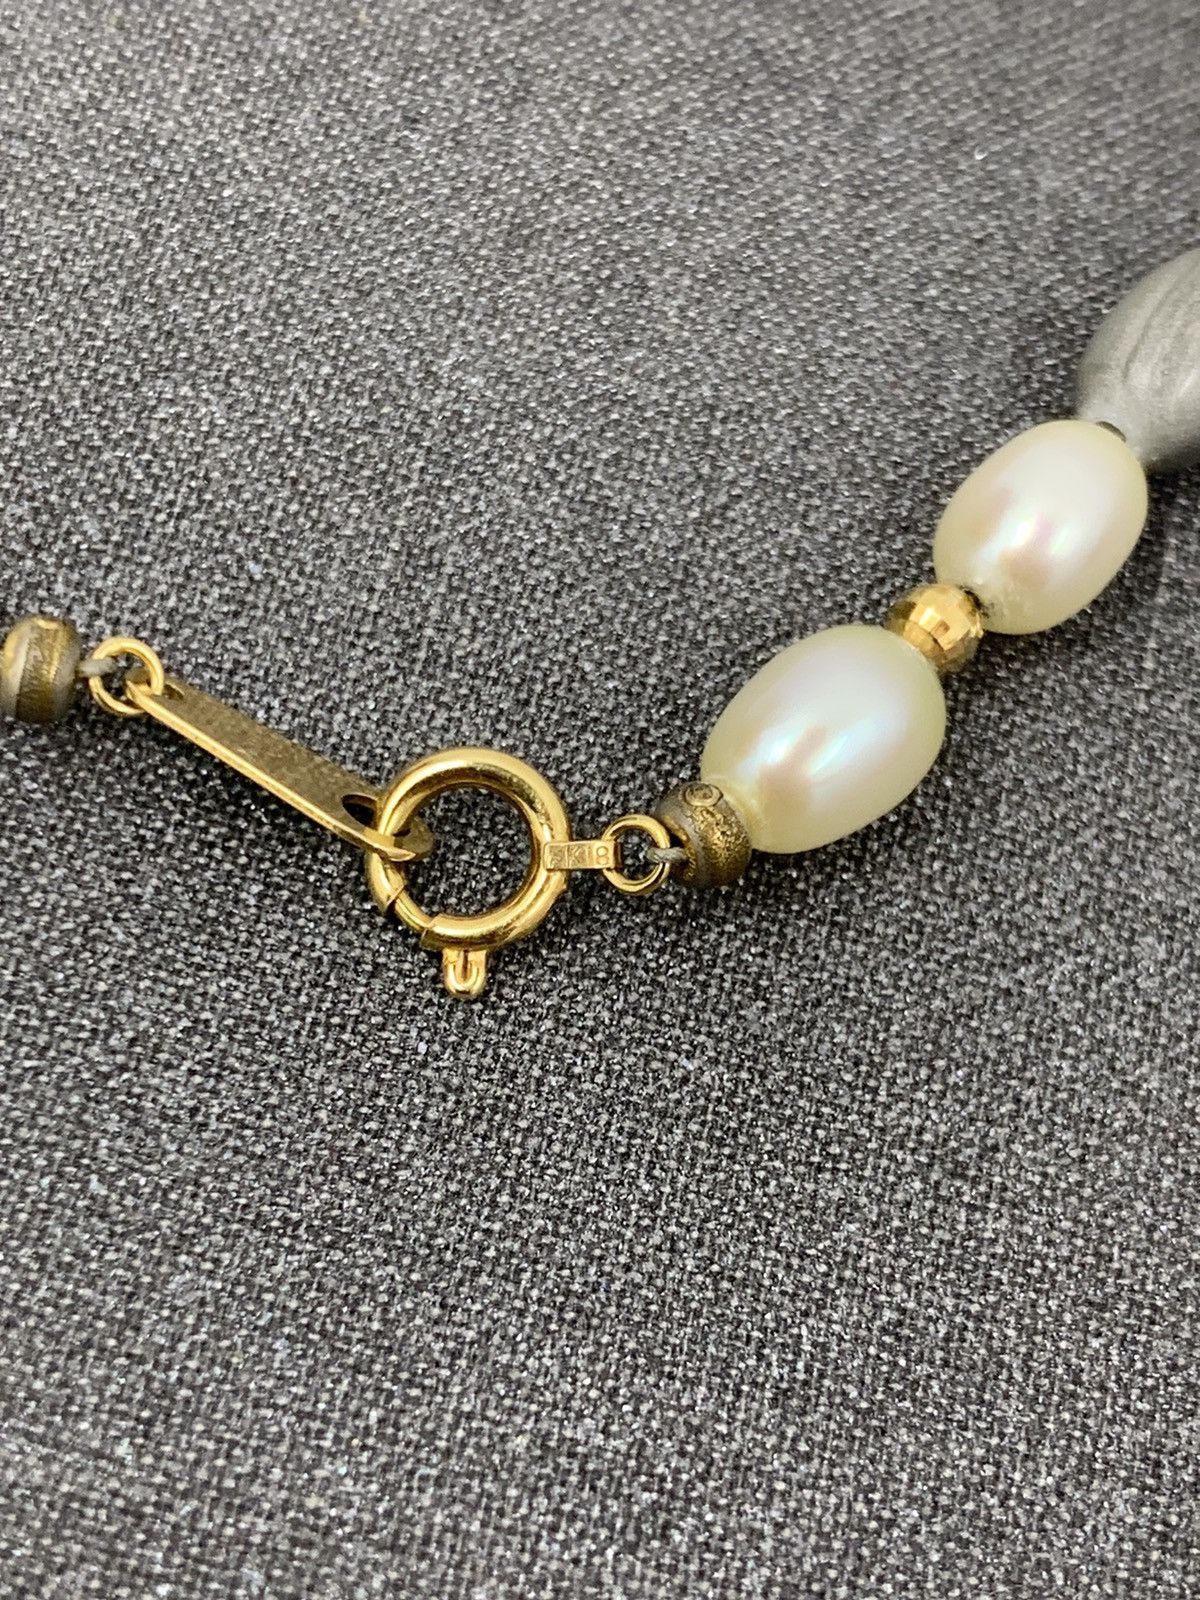 Vintage 18K Gold Natural Pearls Necklace - 5